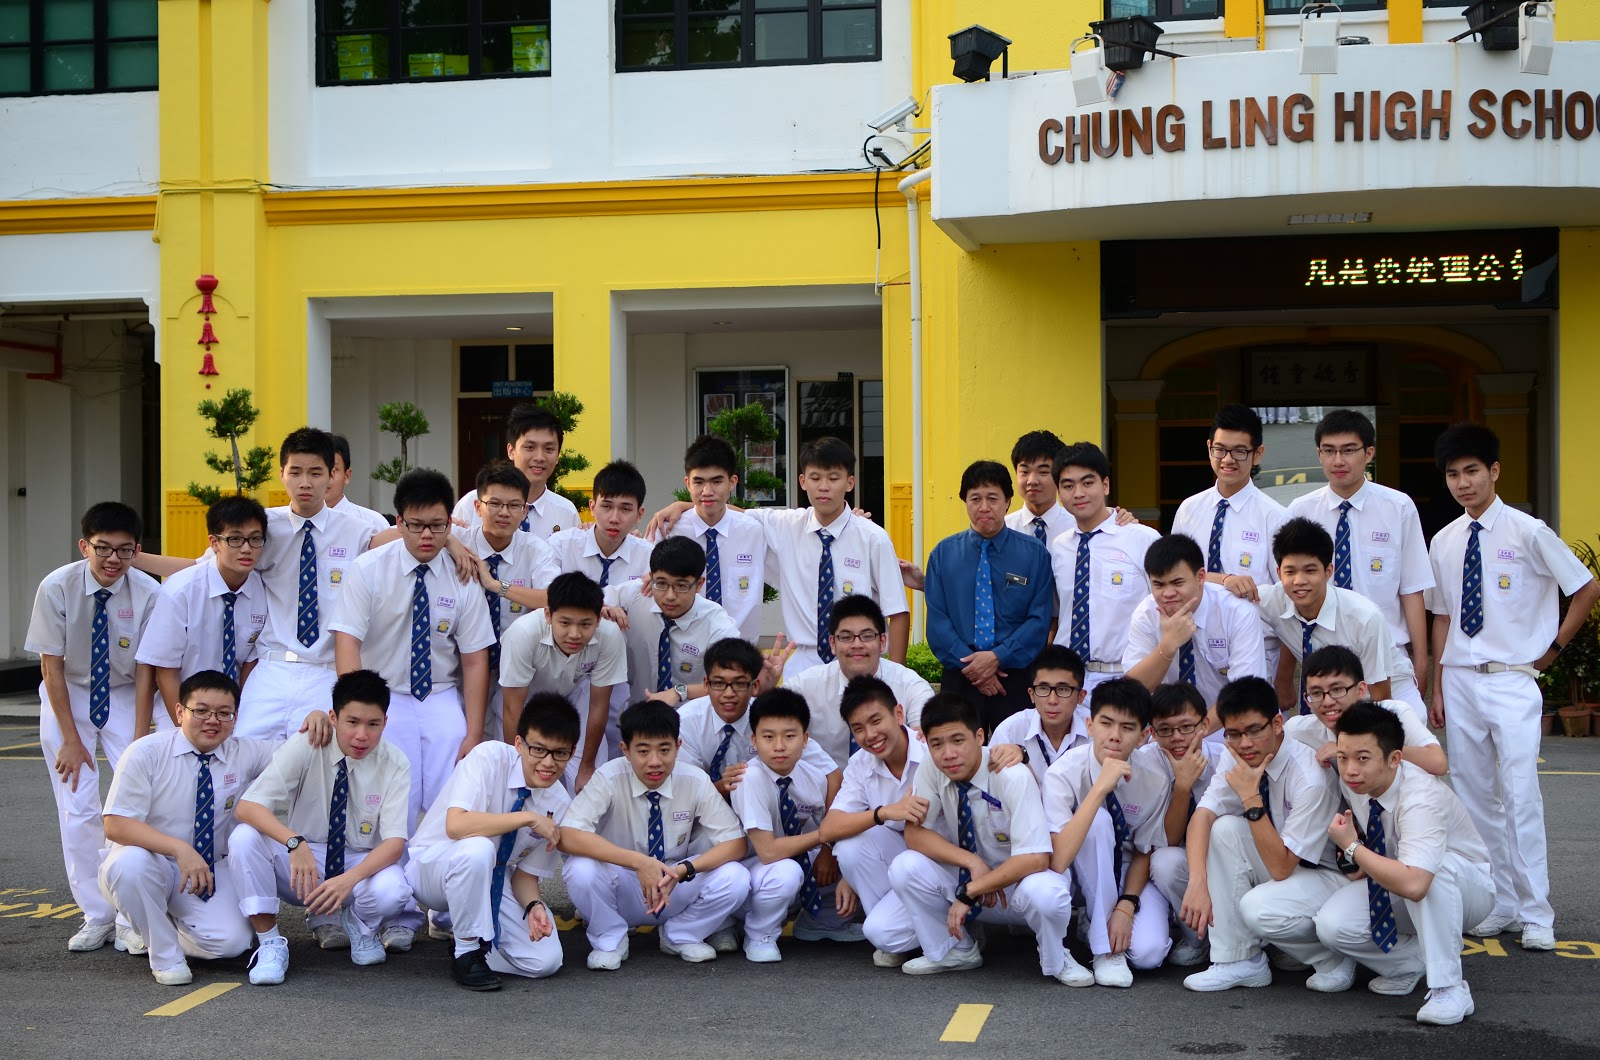 Chung ling high school penang